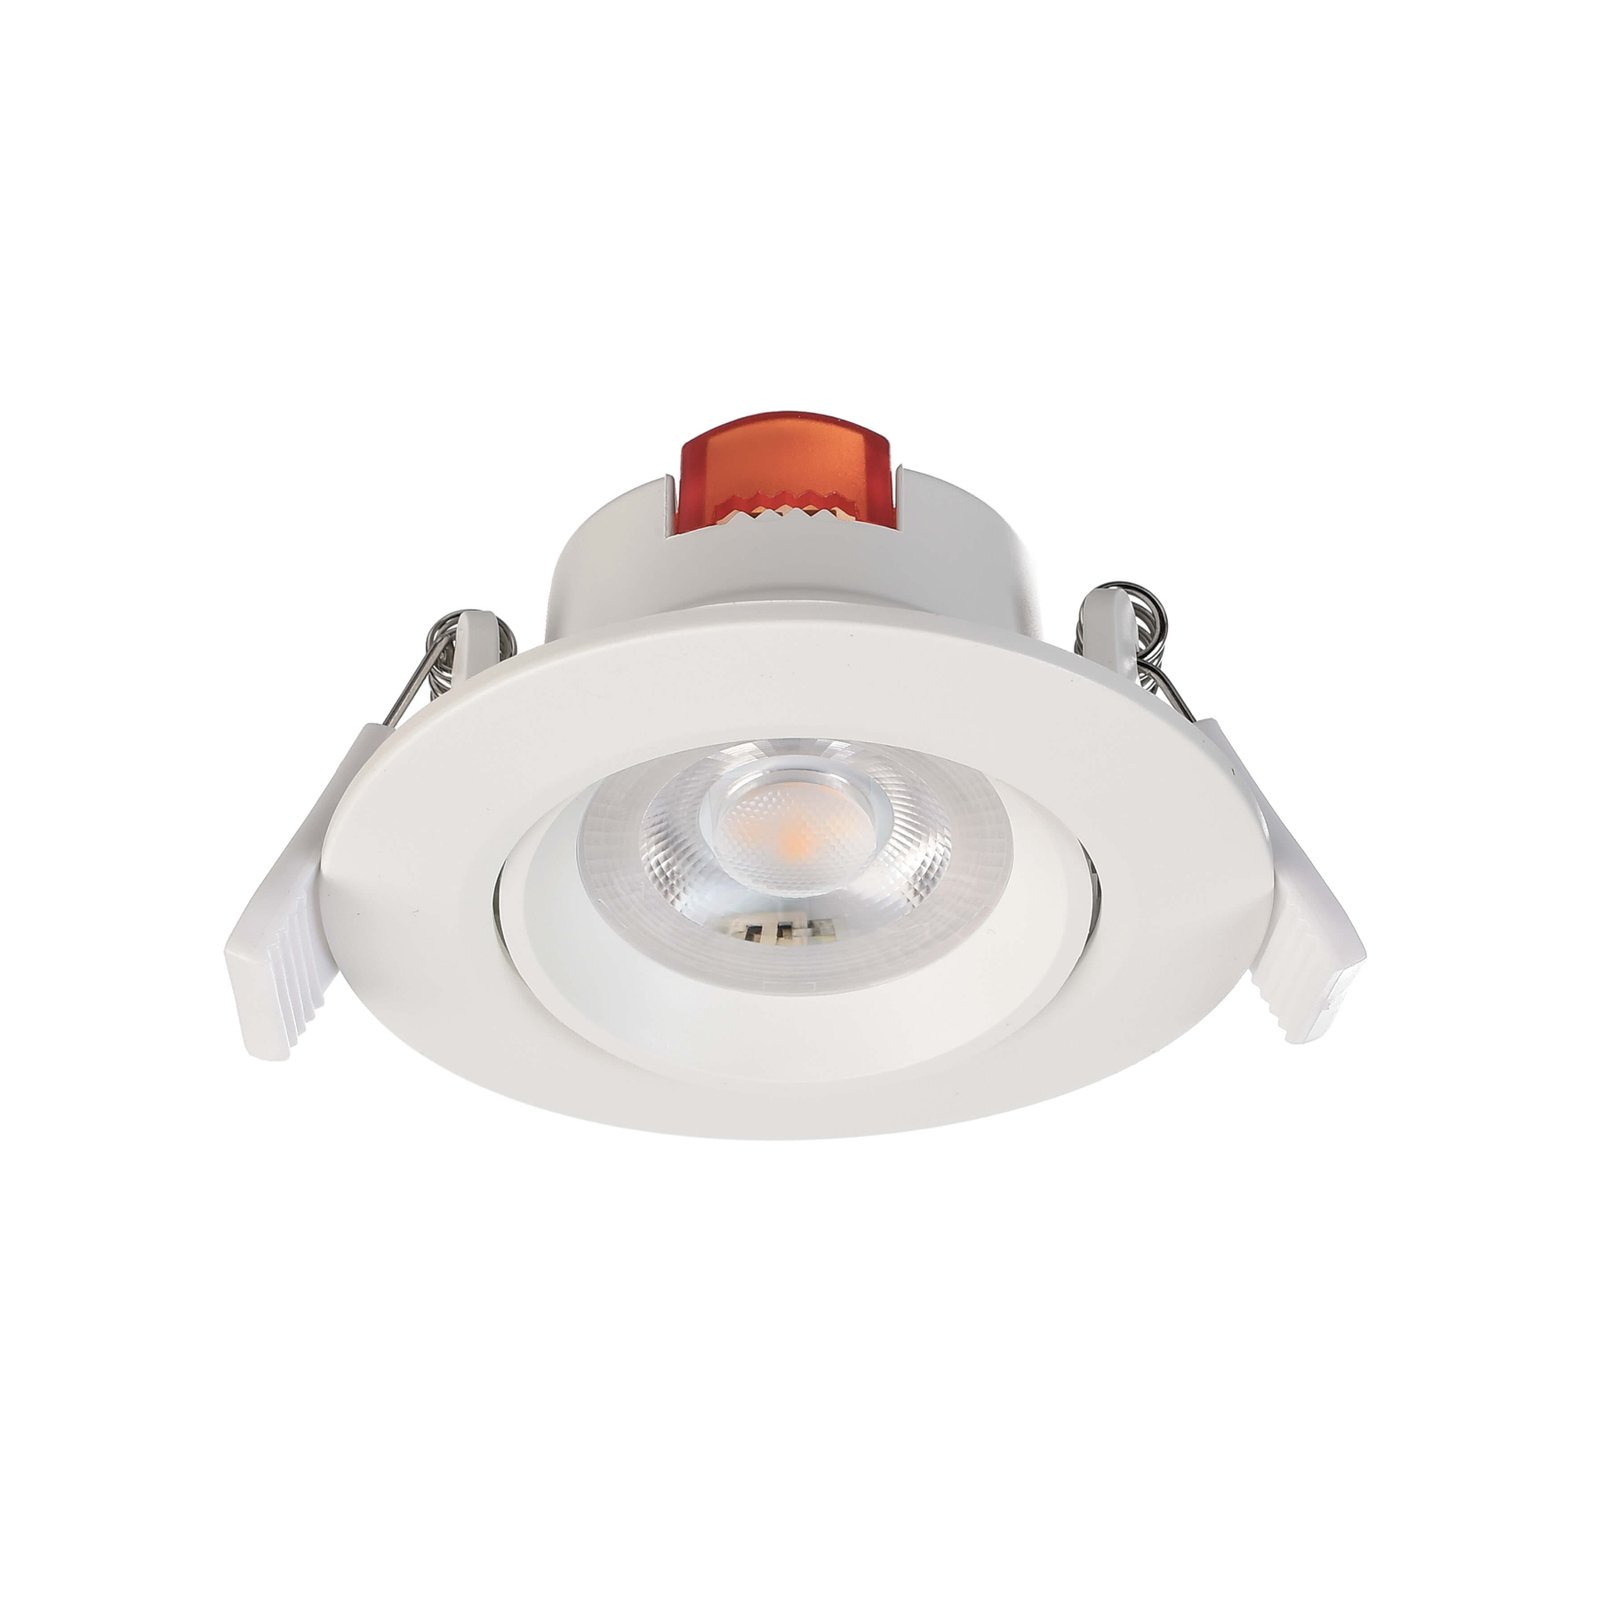 SMD 68 LED recessed ceiling light 230V white 3000K